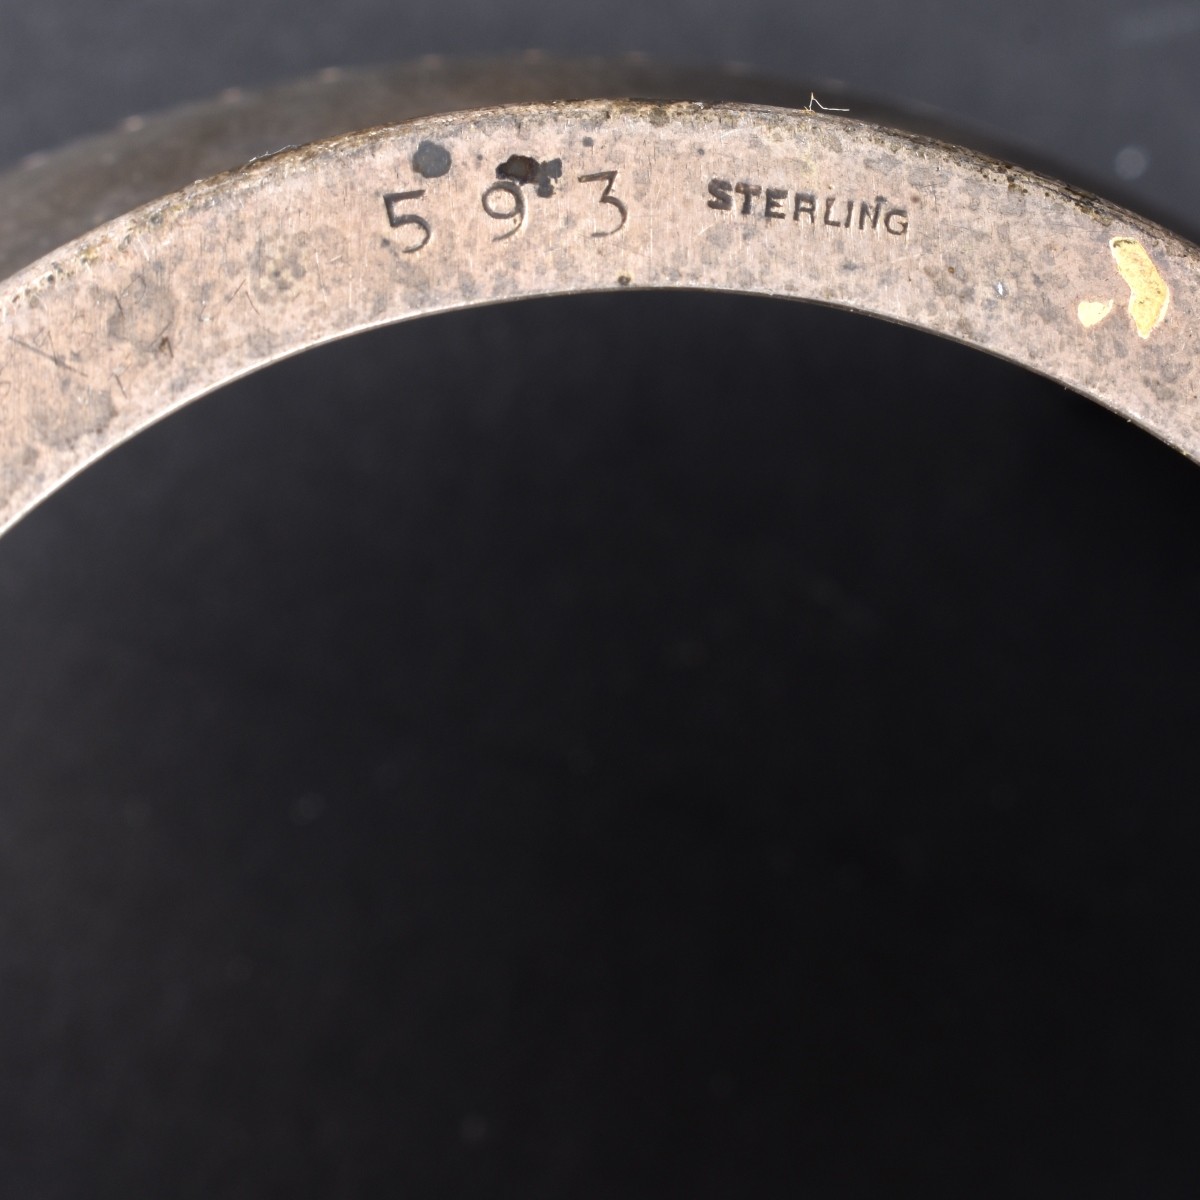 Five Sterling Silver Tableware